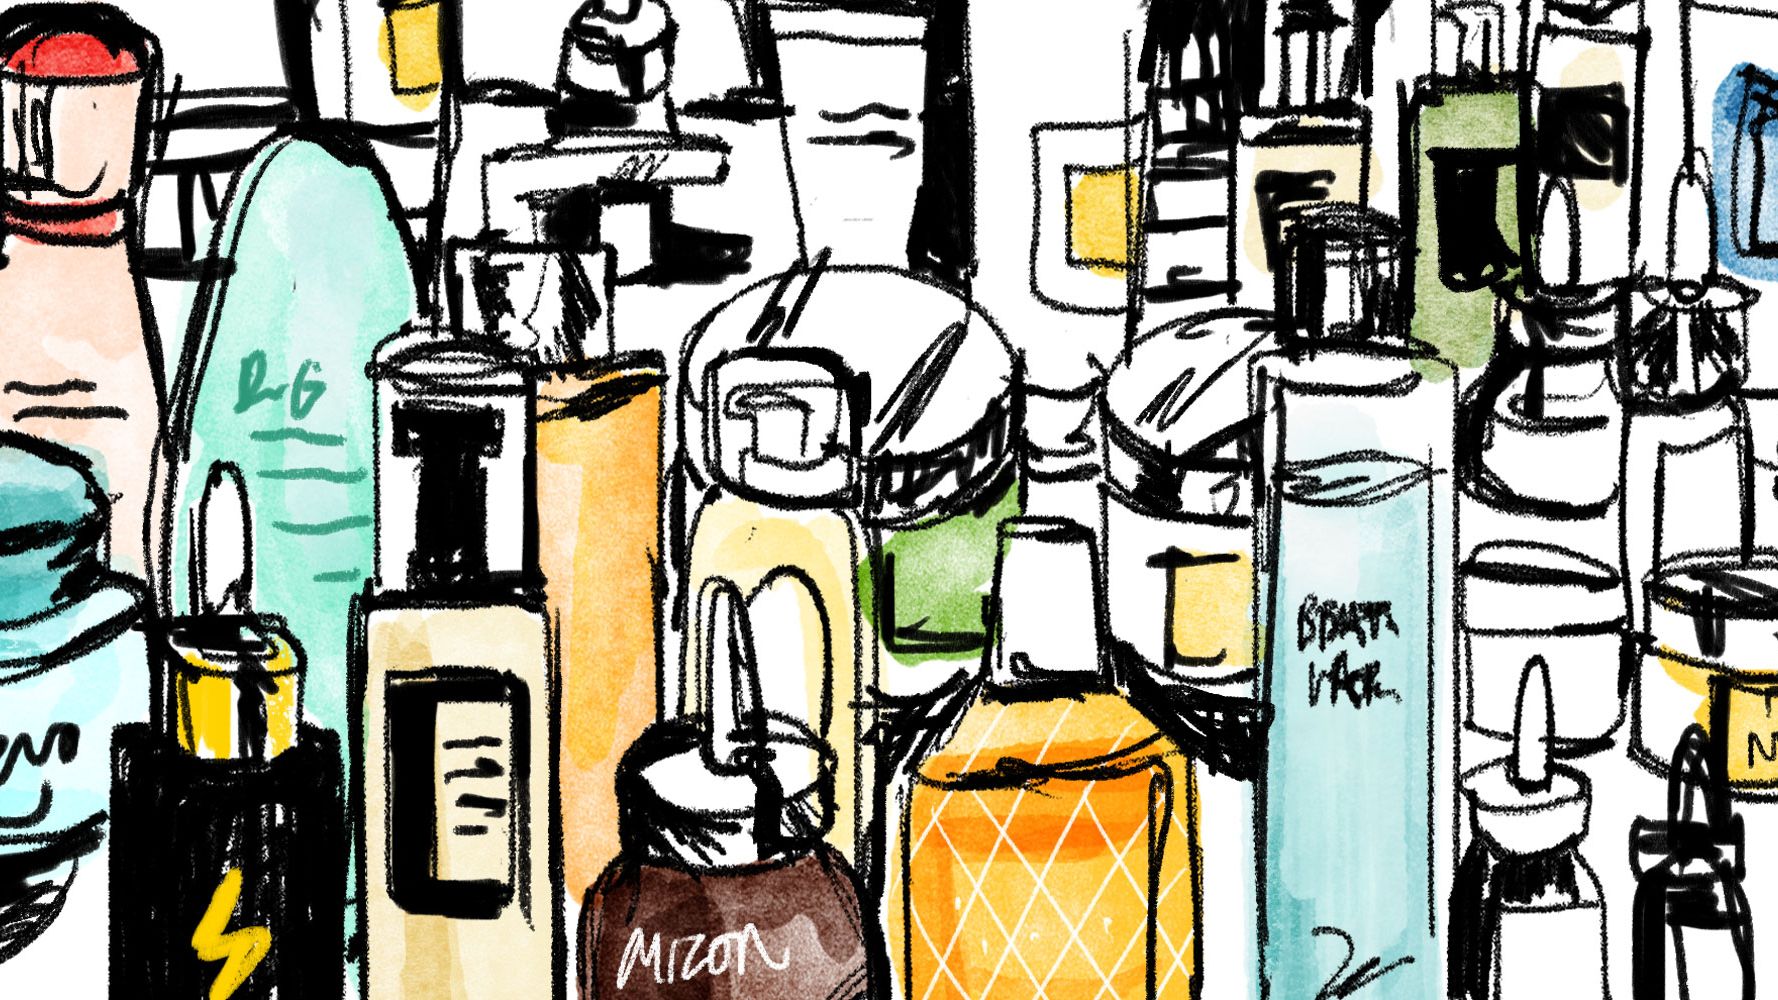 Glass bottle, Bottle, Alcohol, Illustration, Art, Drink, Liqueur, Still life, Distilled beverage, 